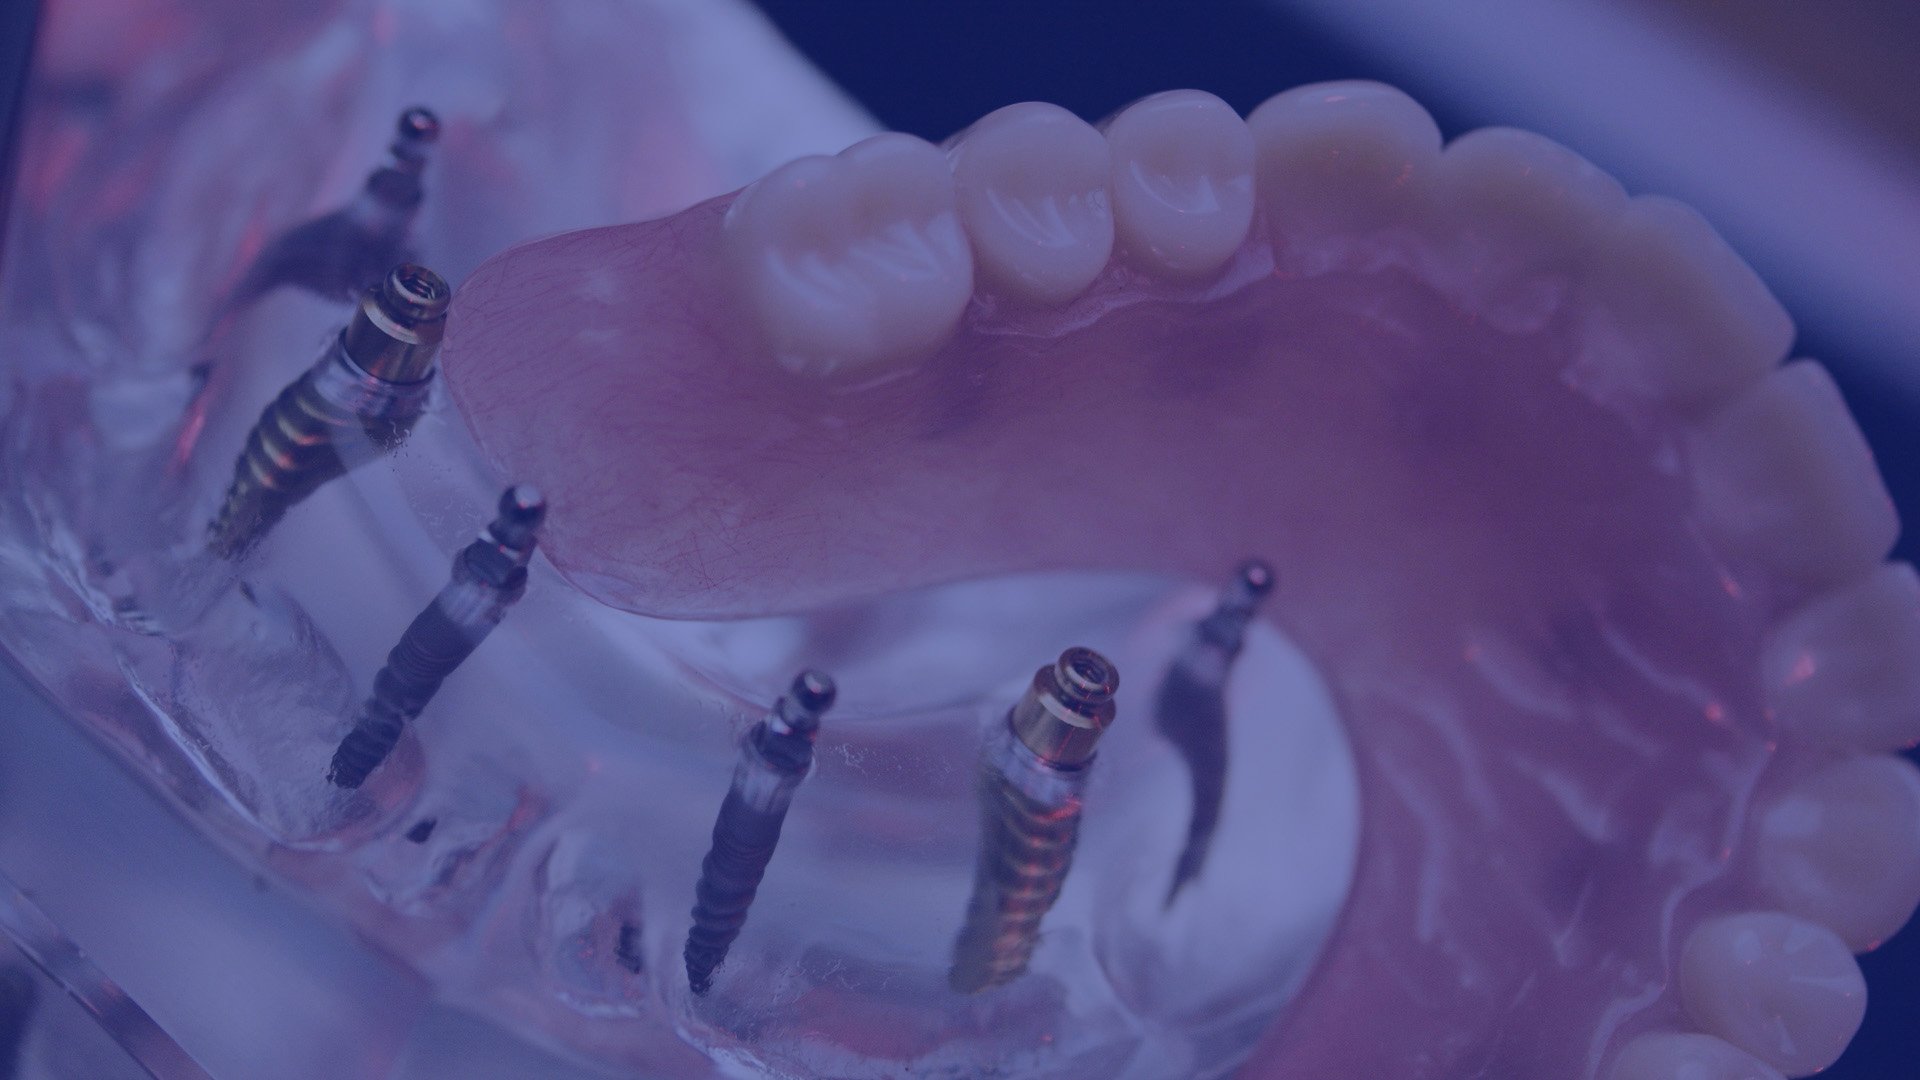 Noblesville's Premier Dental Implant Providers